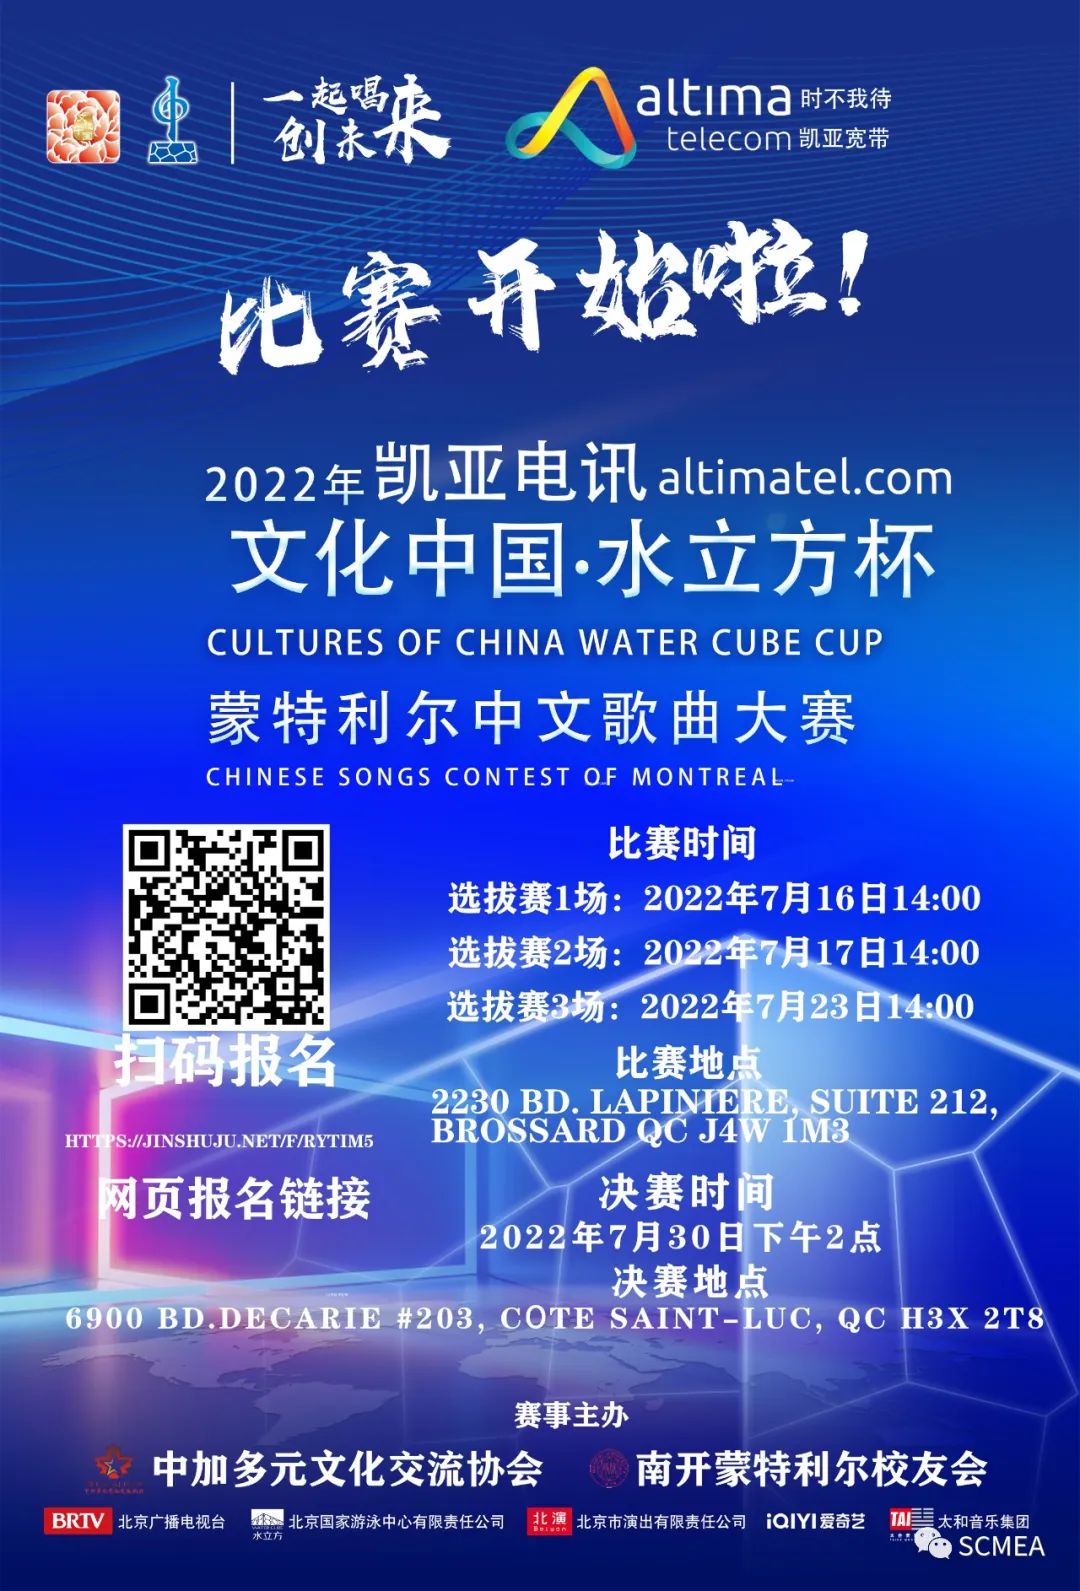 2022年“文化中国-水立方杯”蒙特利尔中文歌曲大赛开赛 选拔赛将持续两周 23晚决出决赛名单